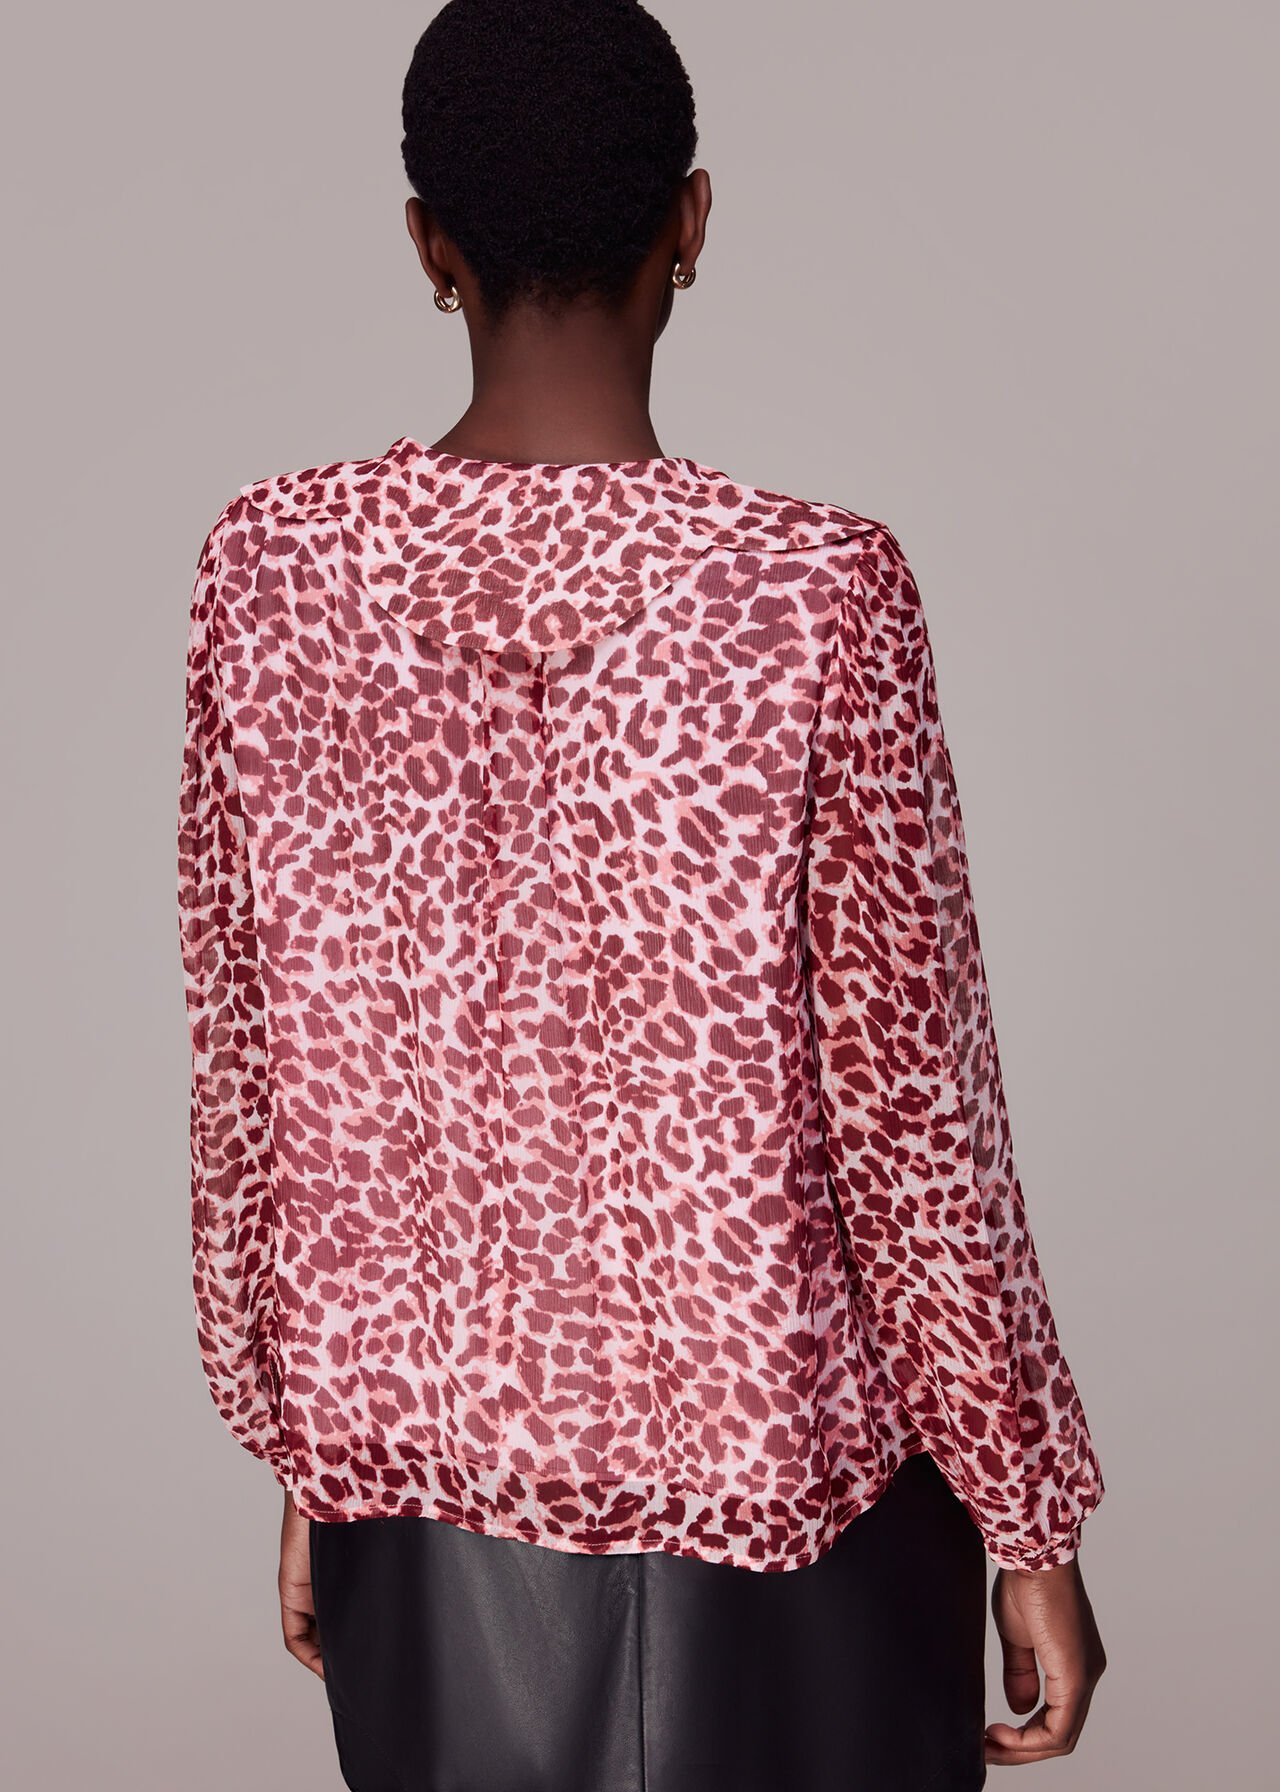 Abstract Cheetah Print Blouse